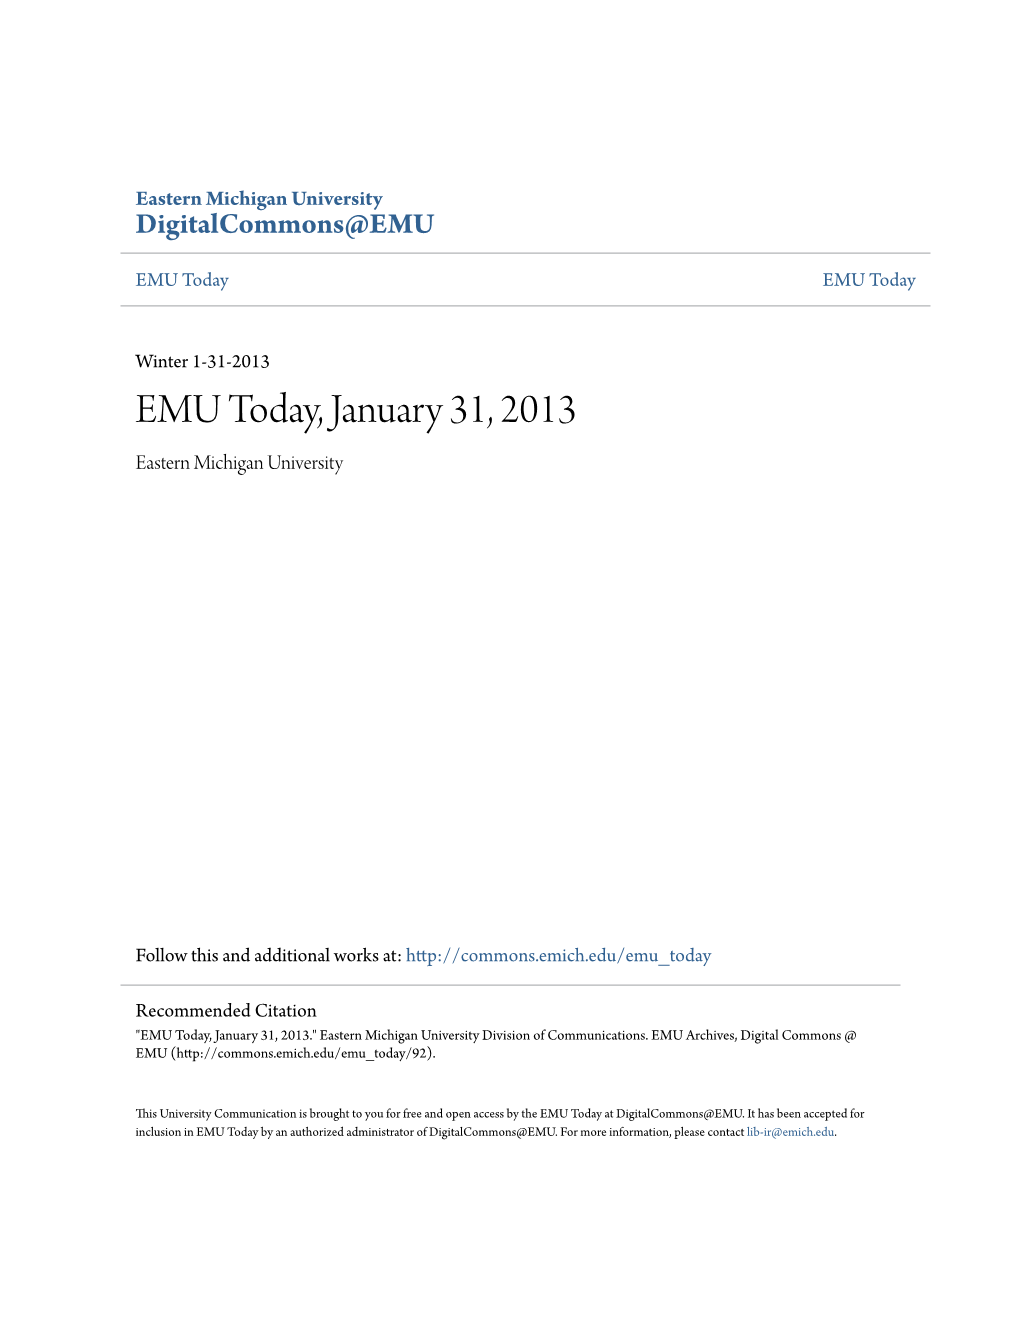 EMU Today, January 31, 2013 Eastern Michigan University